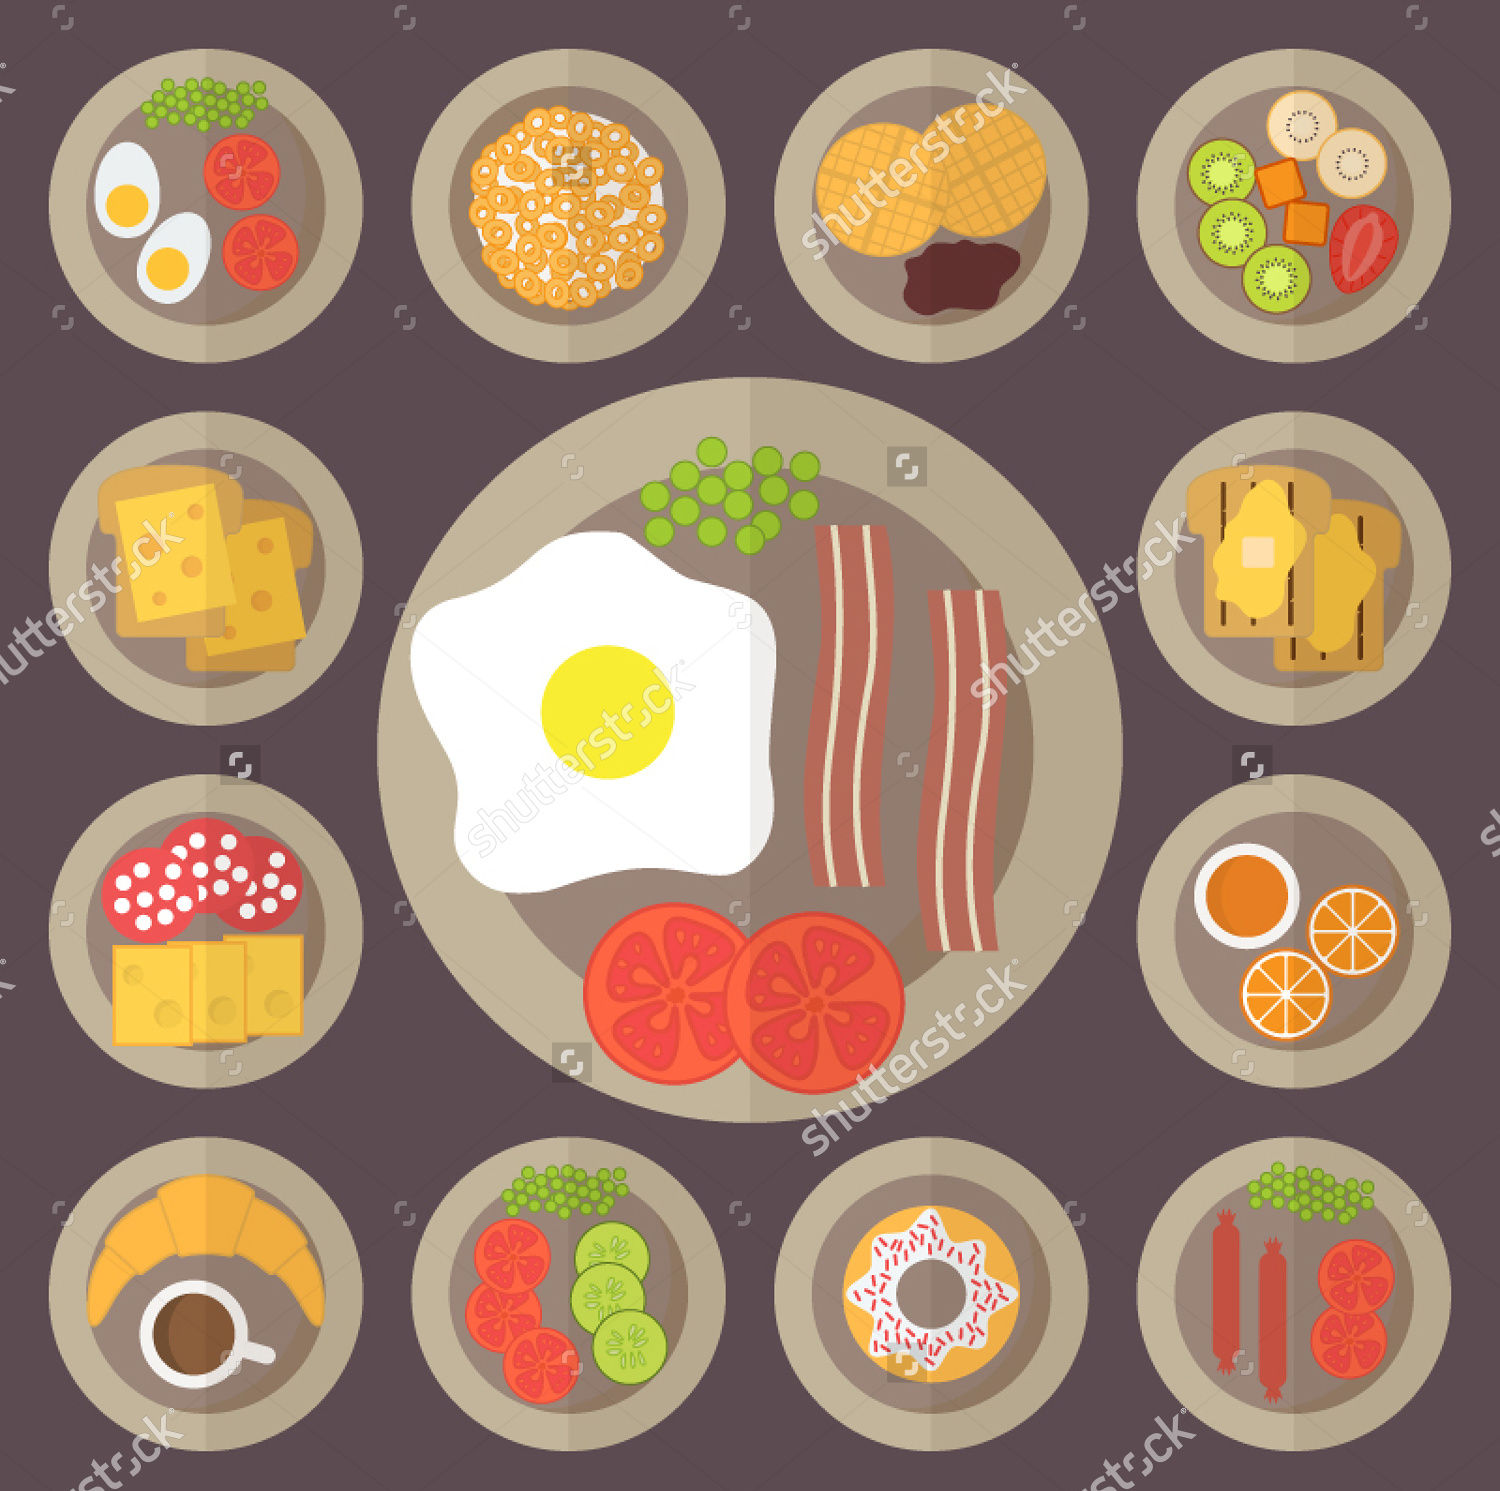 breakfast food icons set